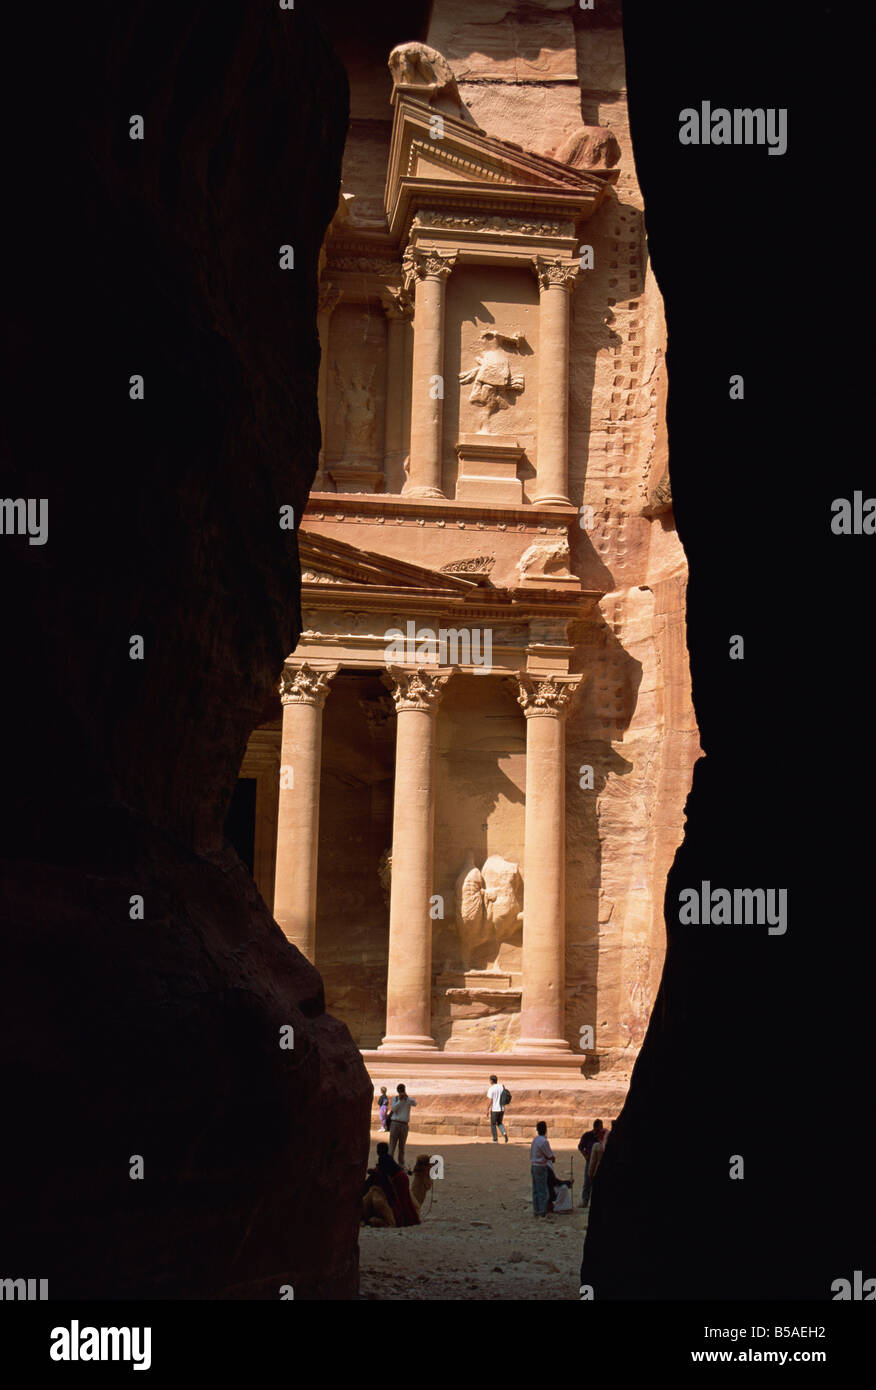 Première Vision de Petra à la fin de la gorge d'entrée Siq Petra Site du patrimoine mondial de l'Jordanie Moyen Orient Banque D'Images